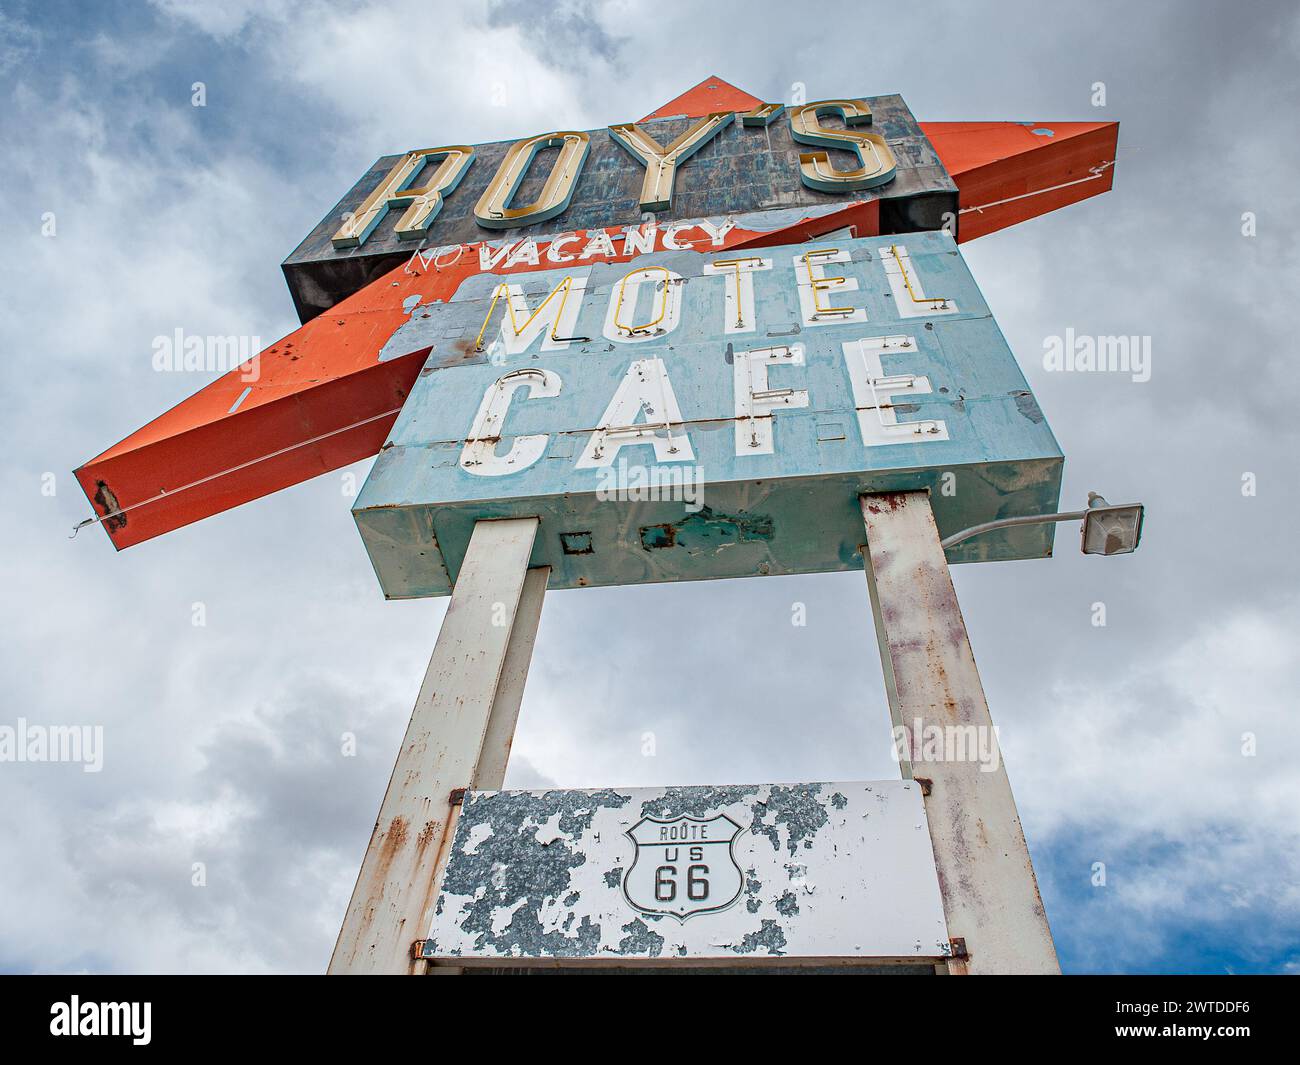 Emblématique Roy's Café à Amboy sur la route 66 dans le désert de Mojave, Californie Banque D'Images